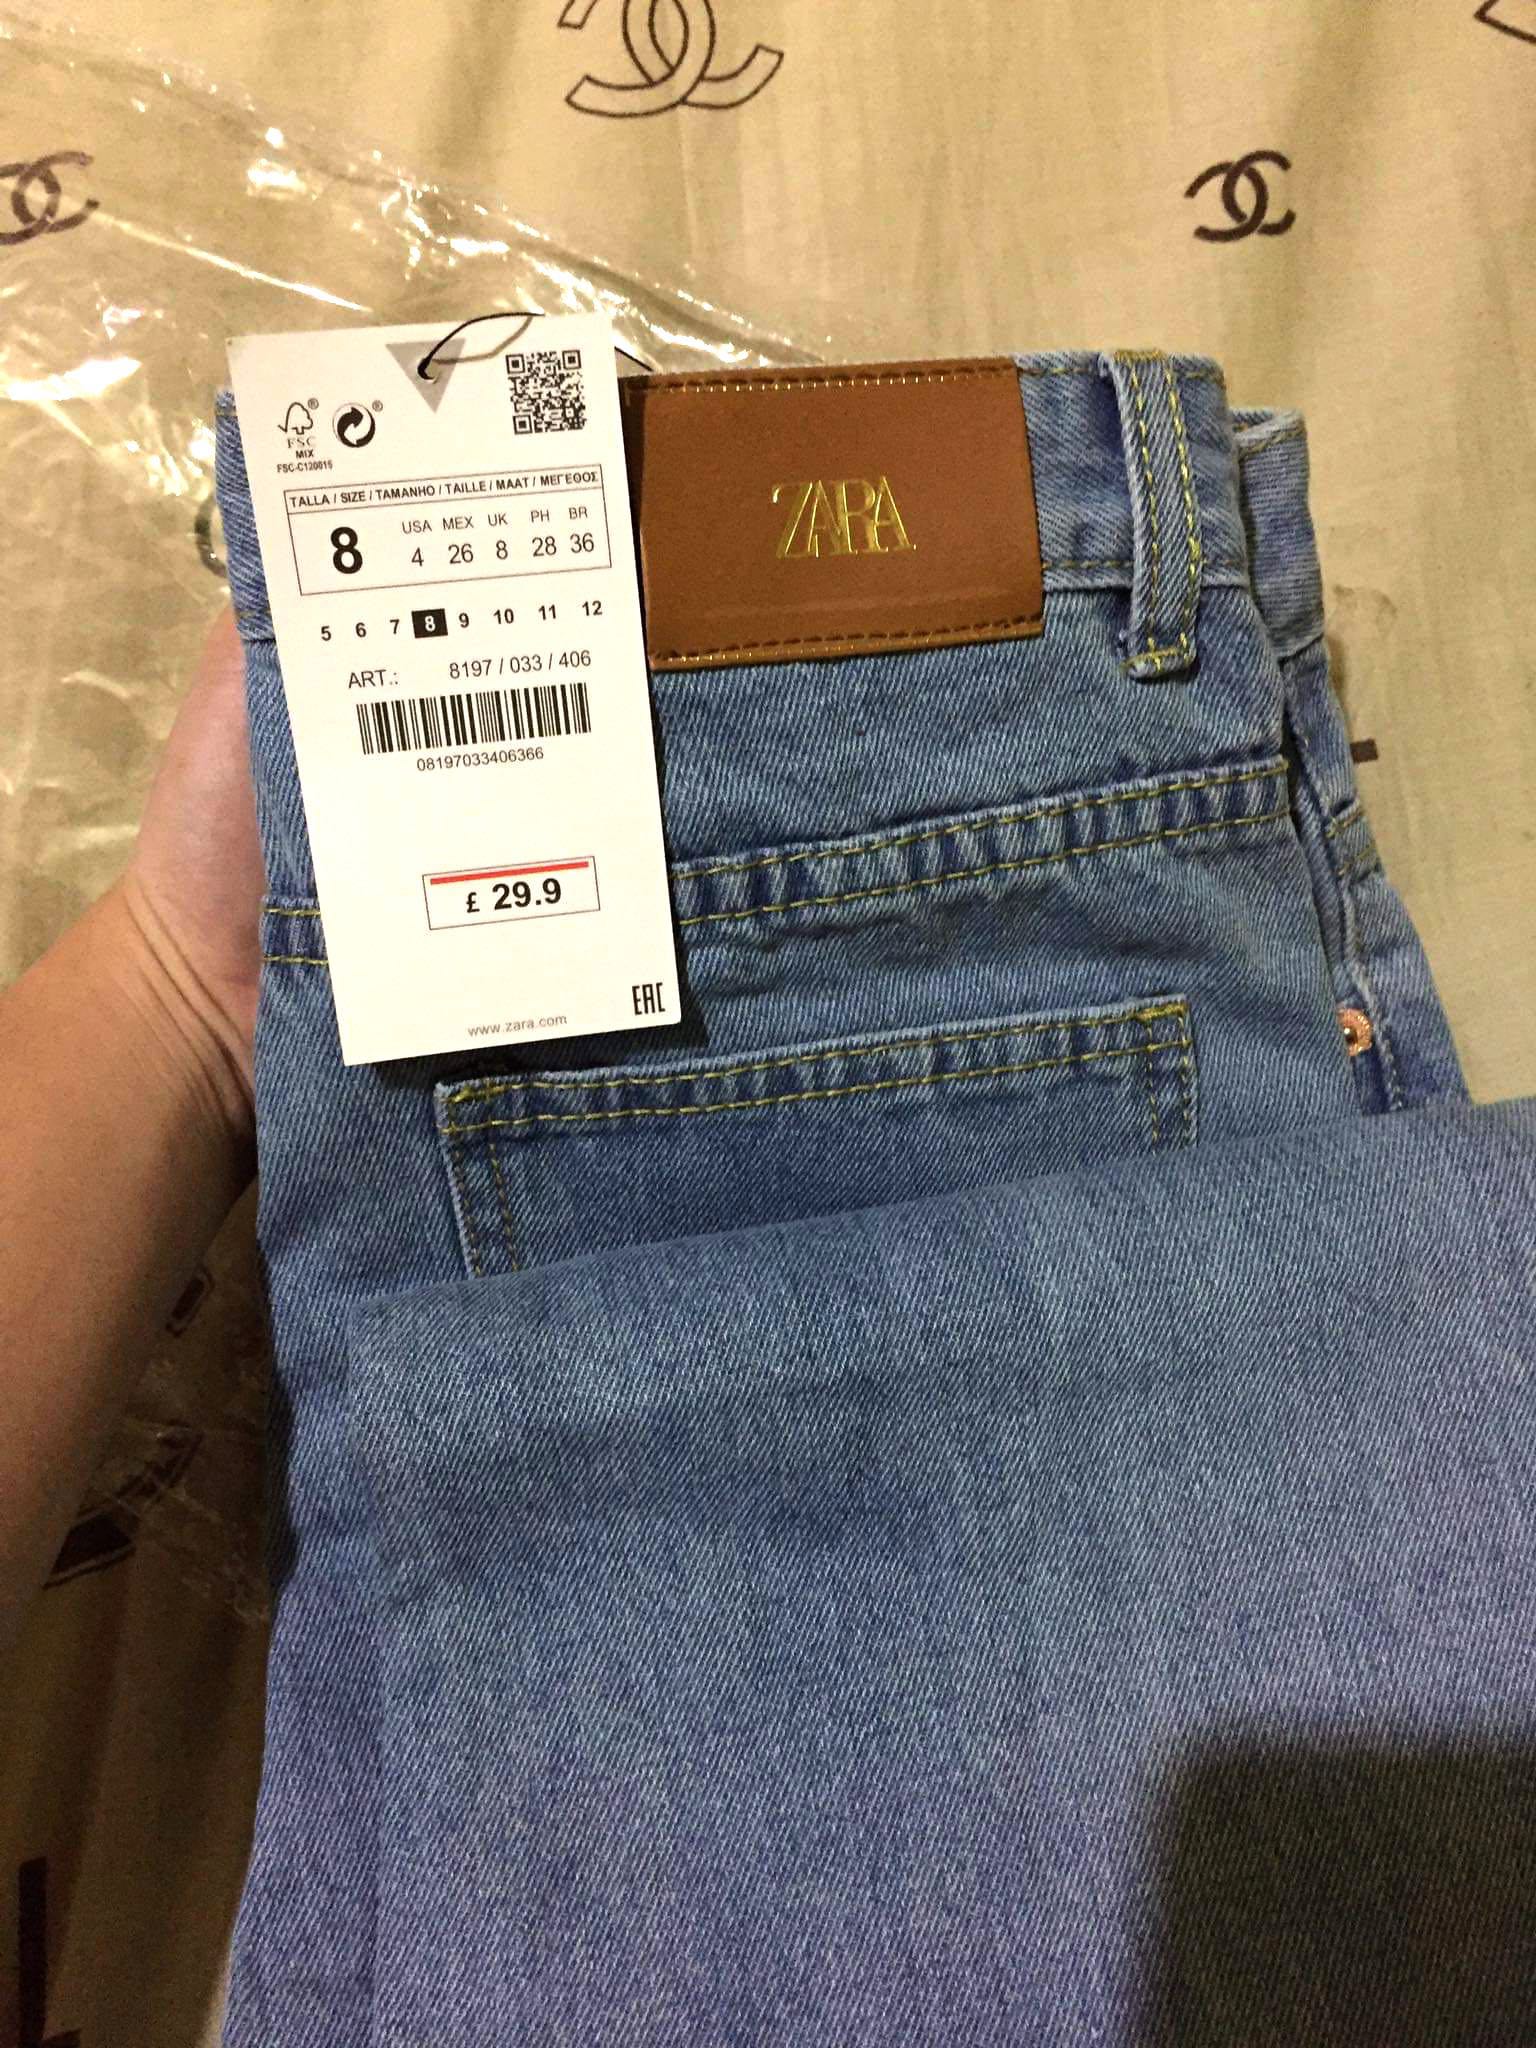 armani jeans back pocket design